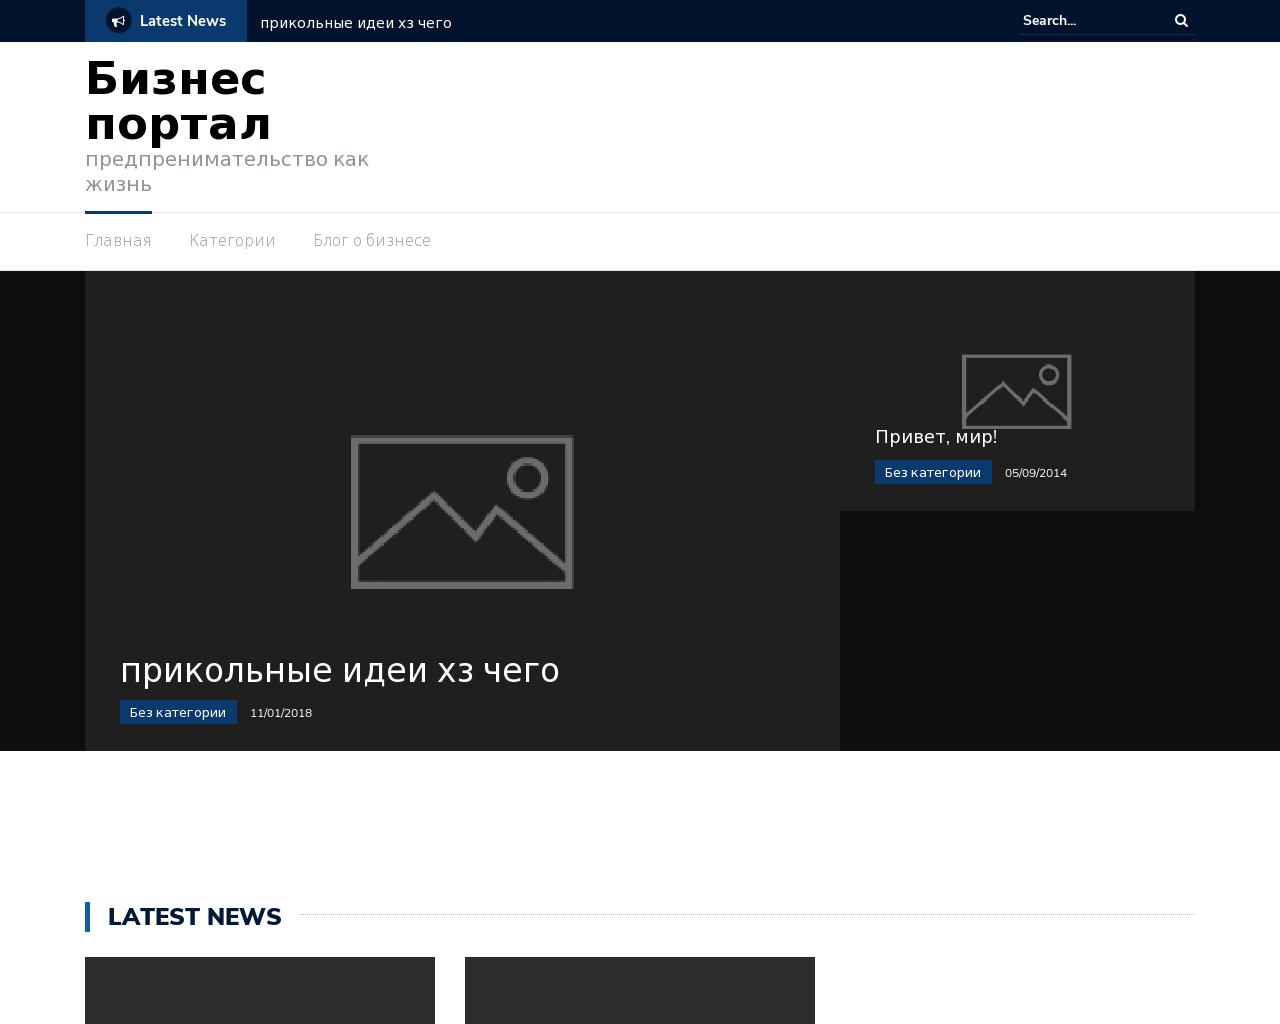 Изображение сайта busnes.ru в разрешении 1280x1024